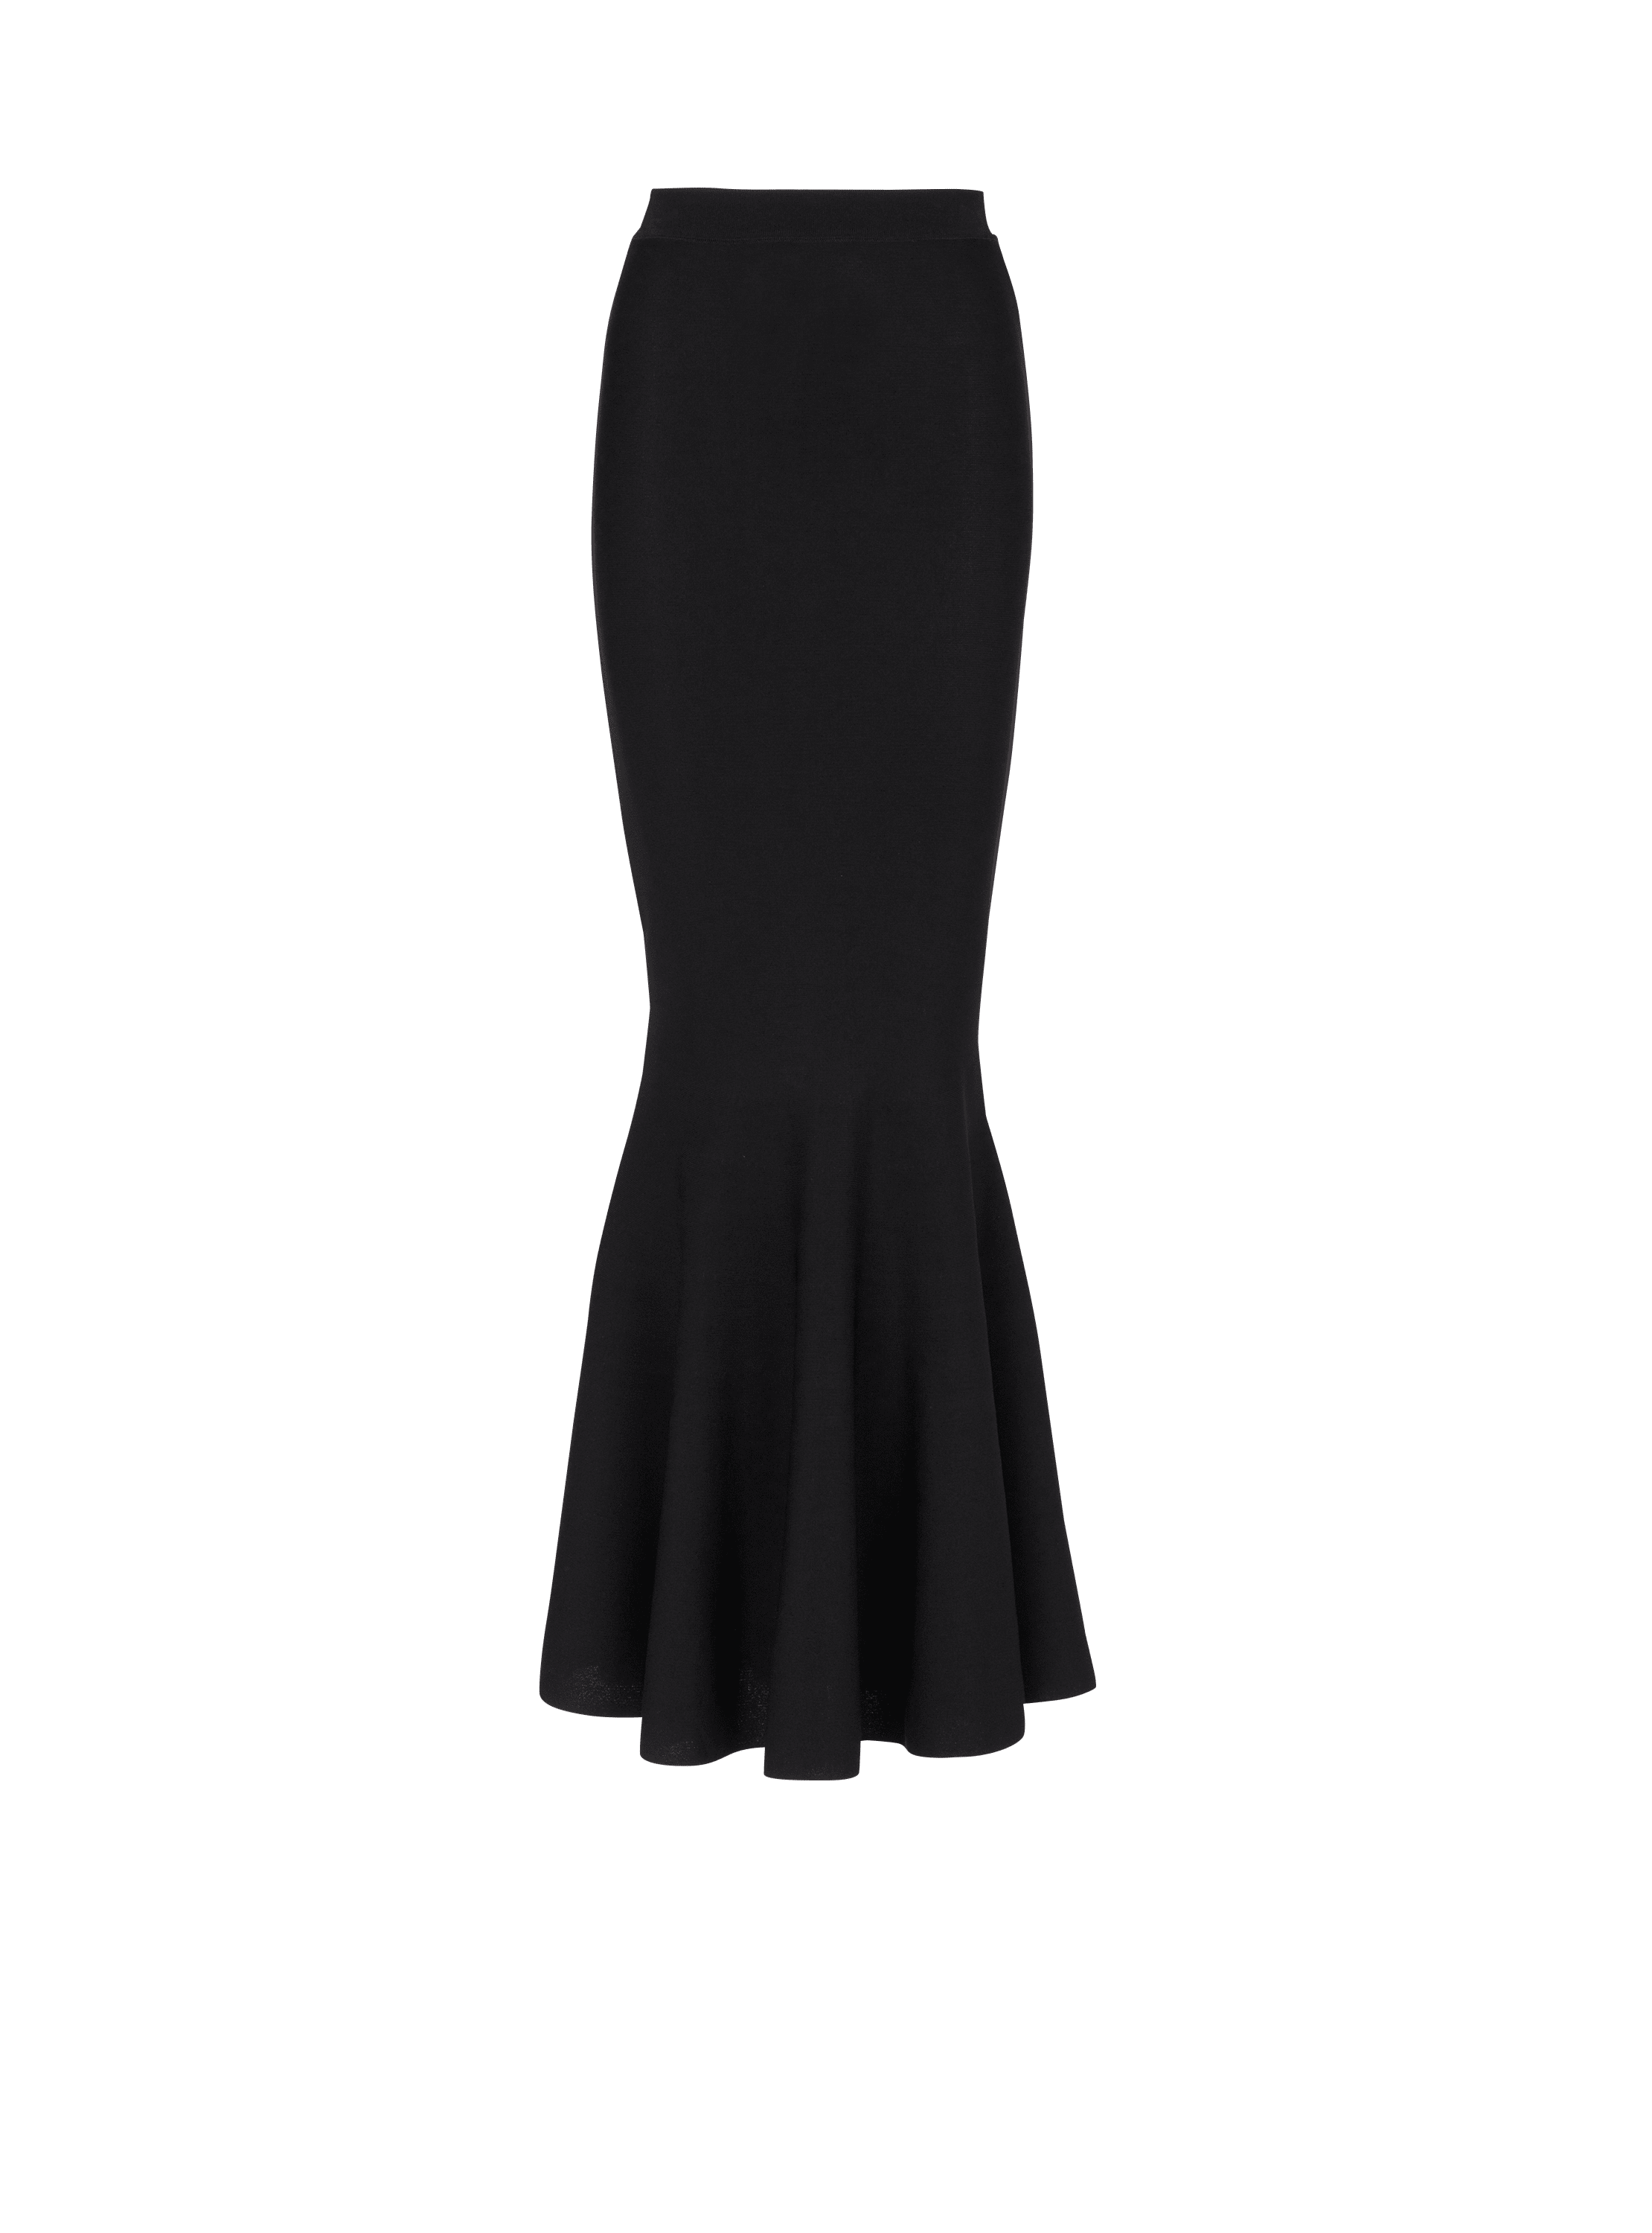 Jolie Madame knit skirt, black, hi-res